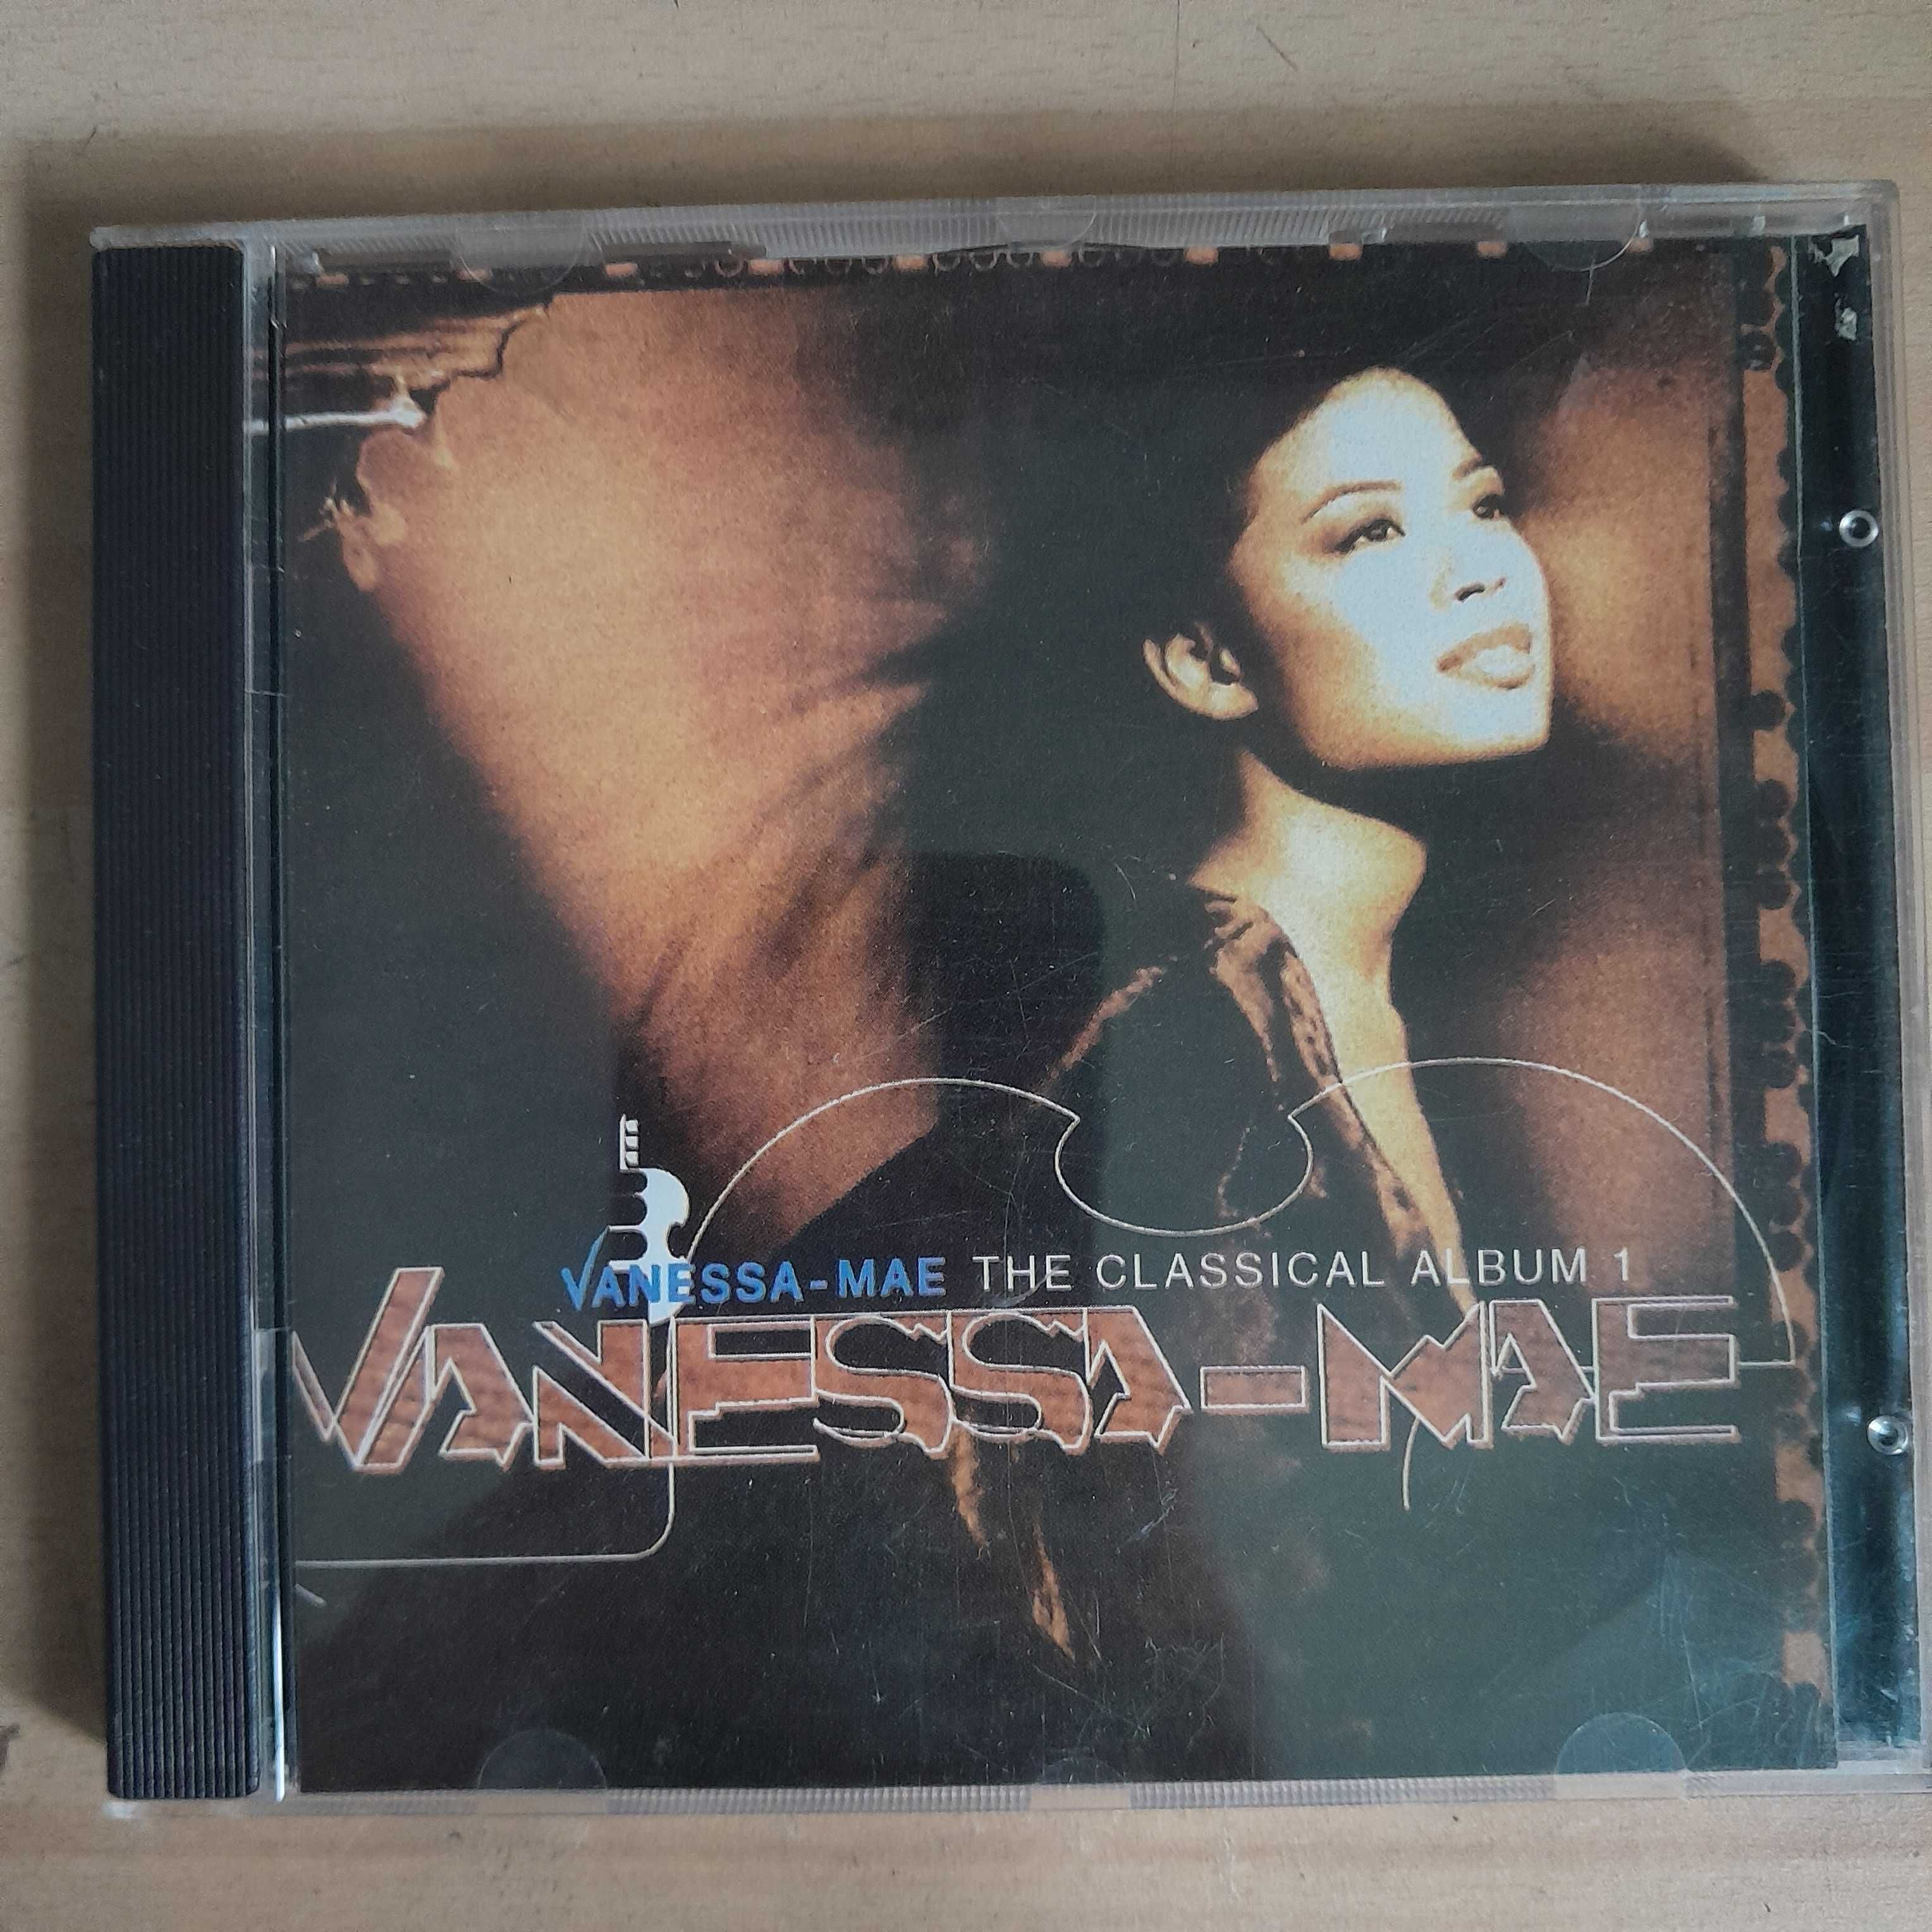 Vanessa Mae – The classical album 1